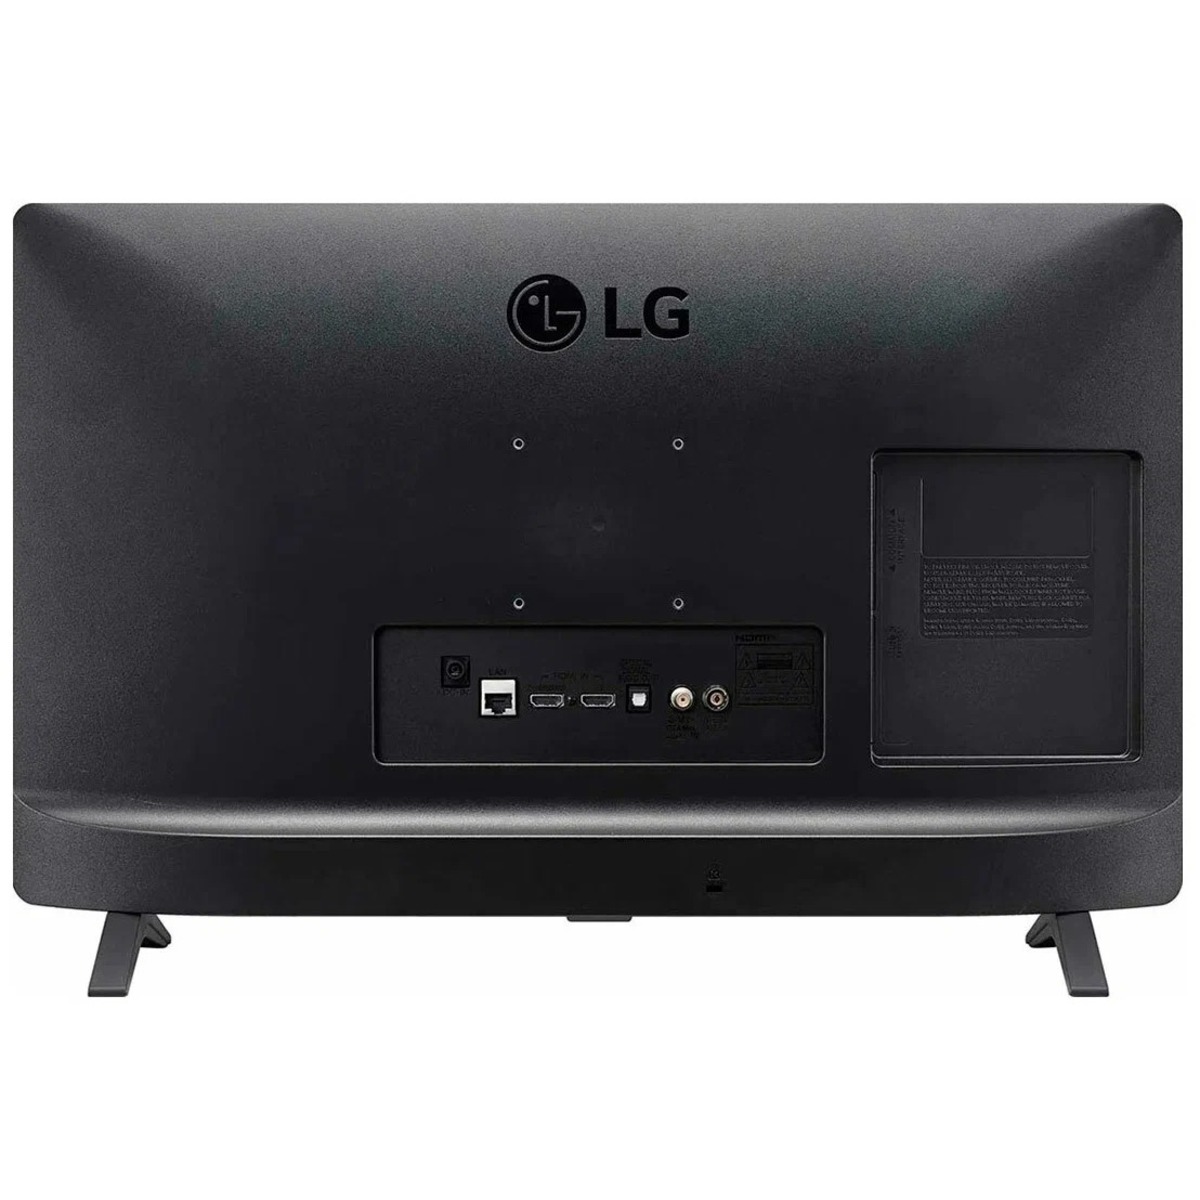 Телевизор LG 24